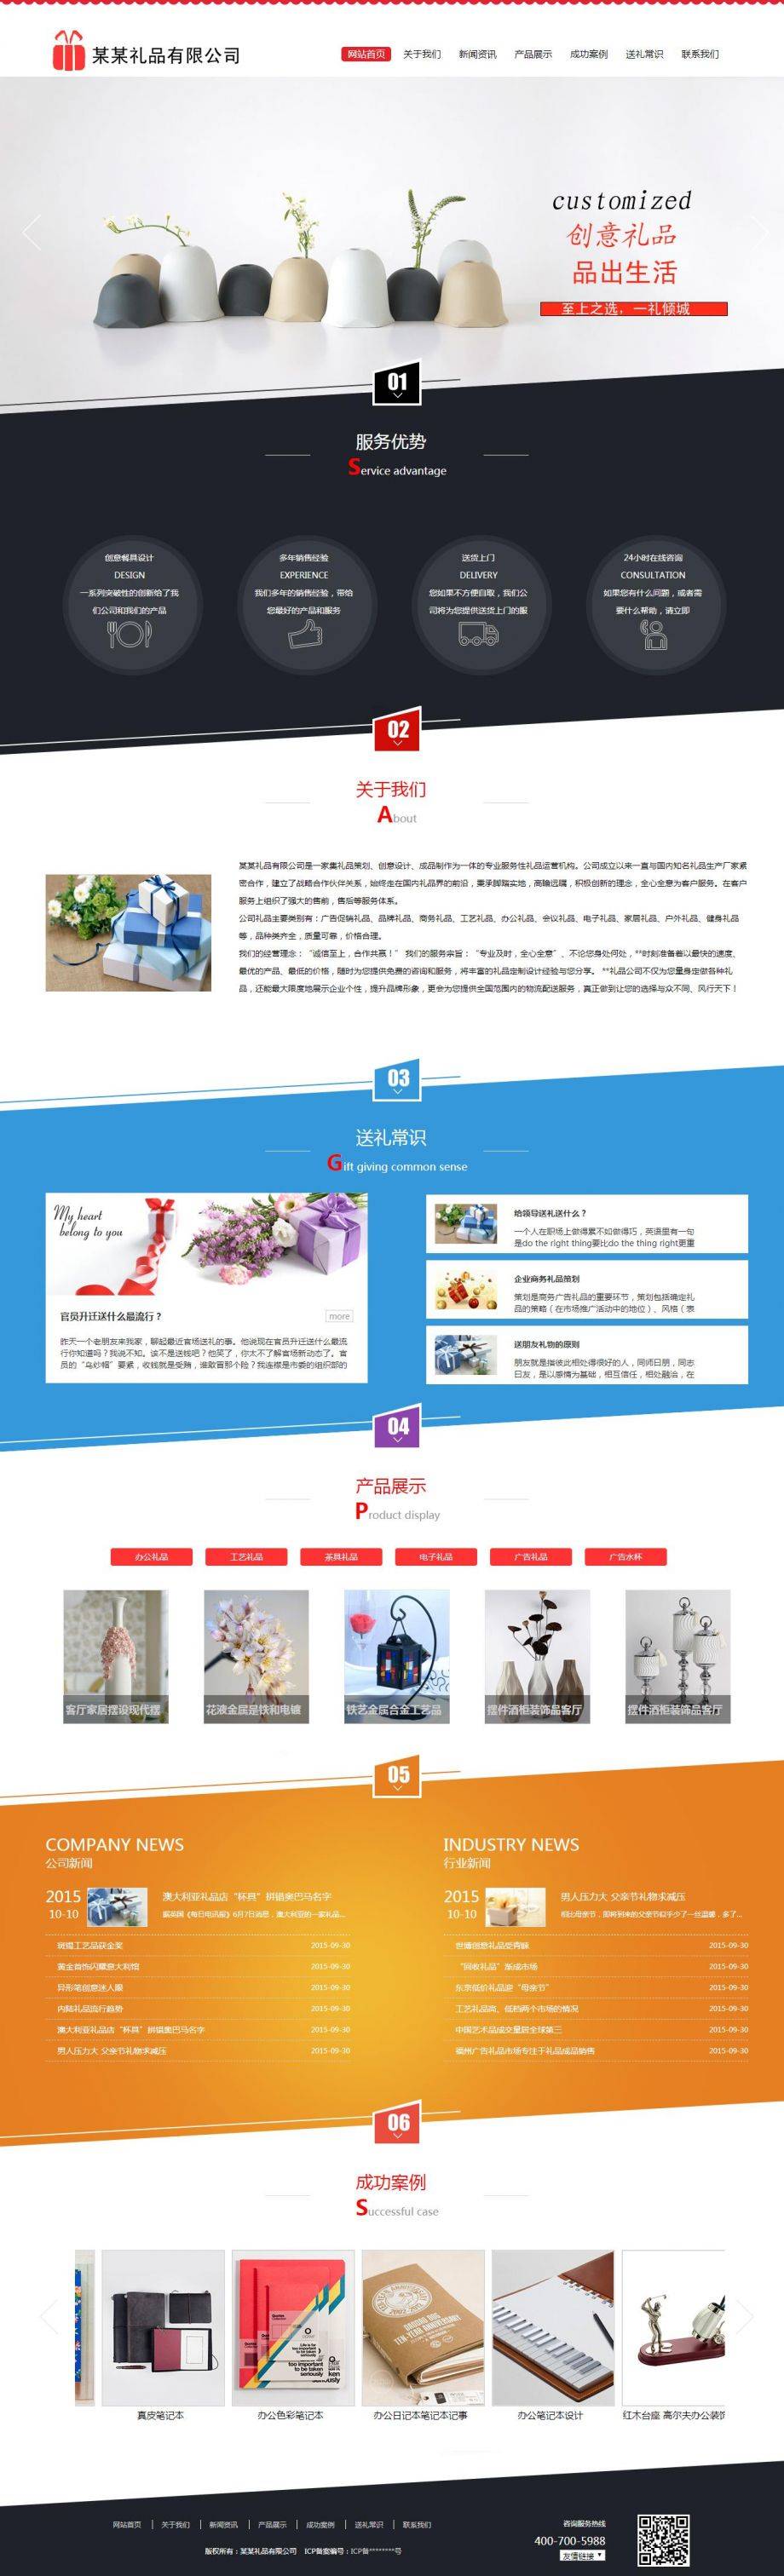 创意礼品设计销售展示网站平台模板